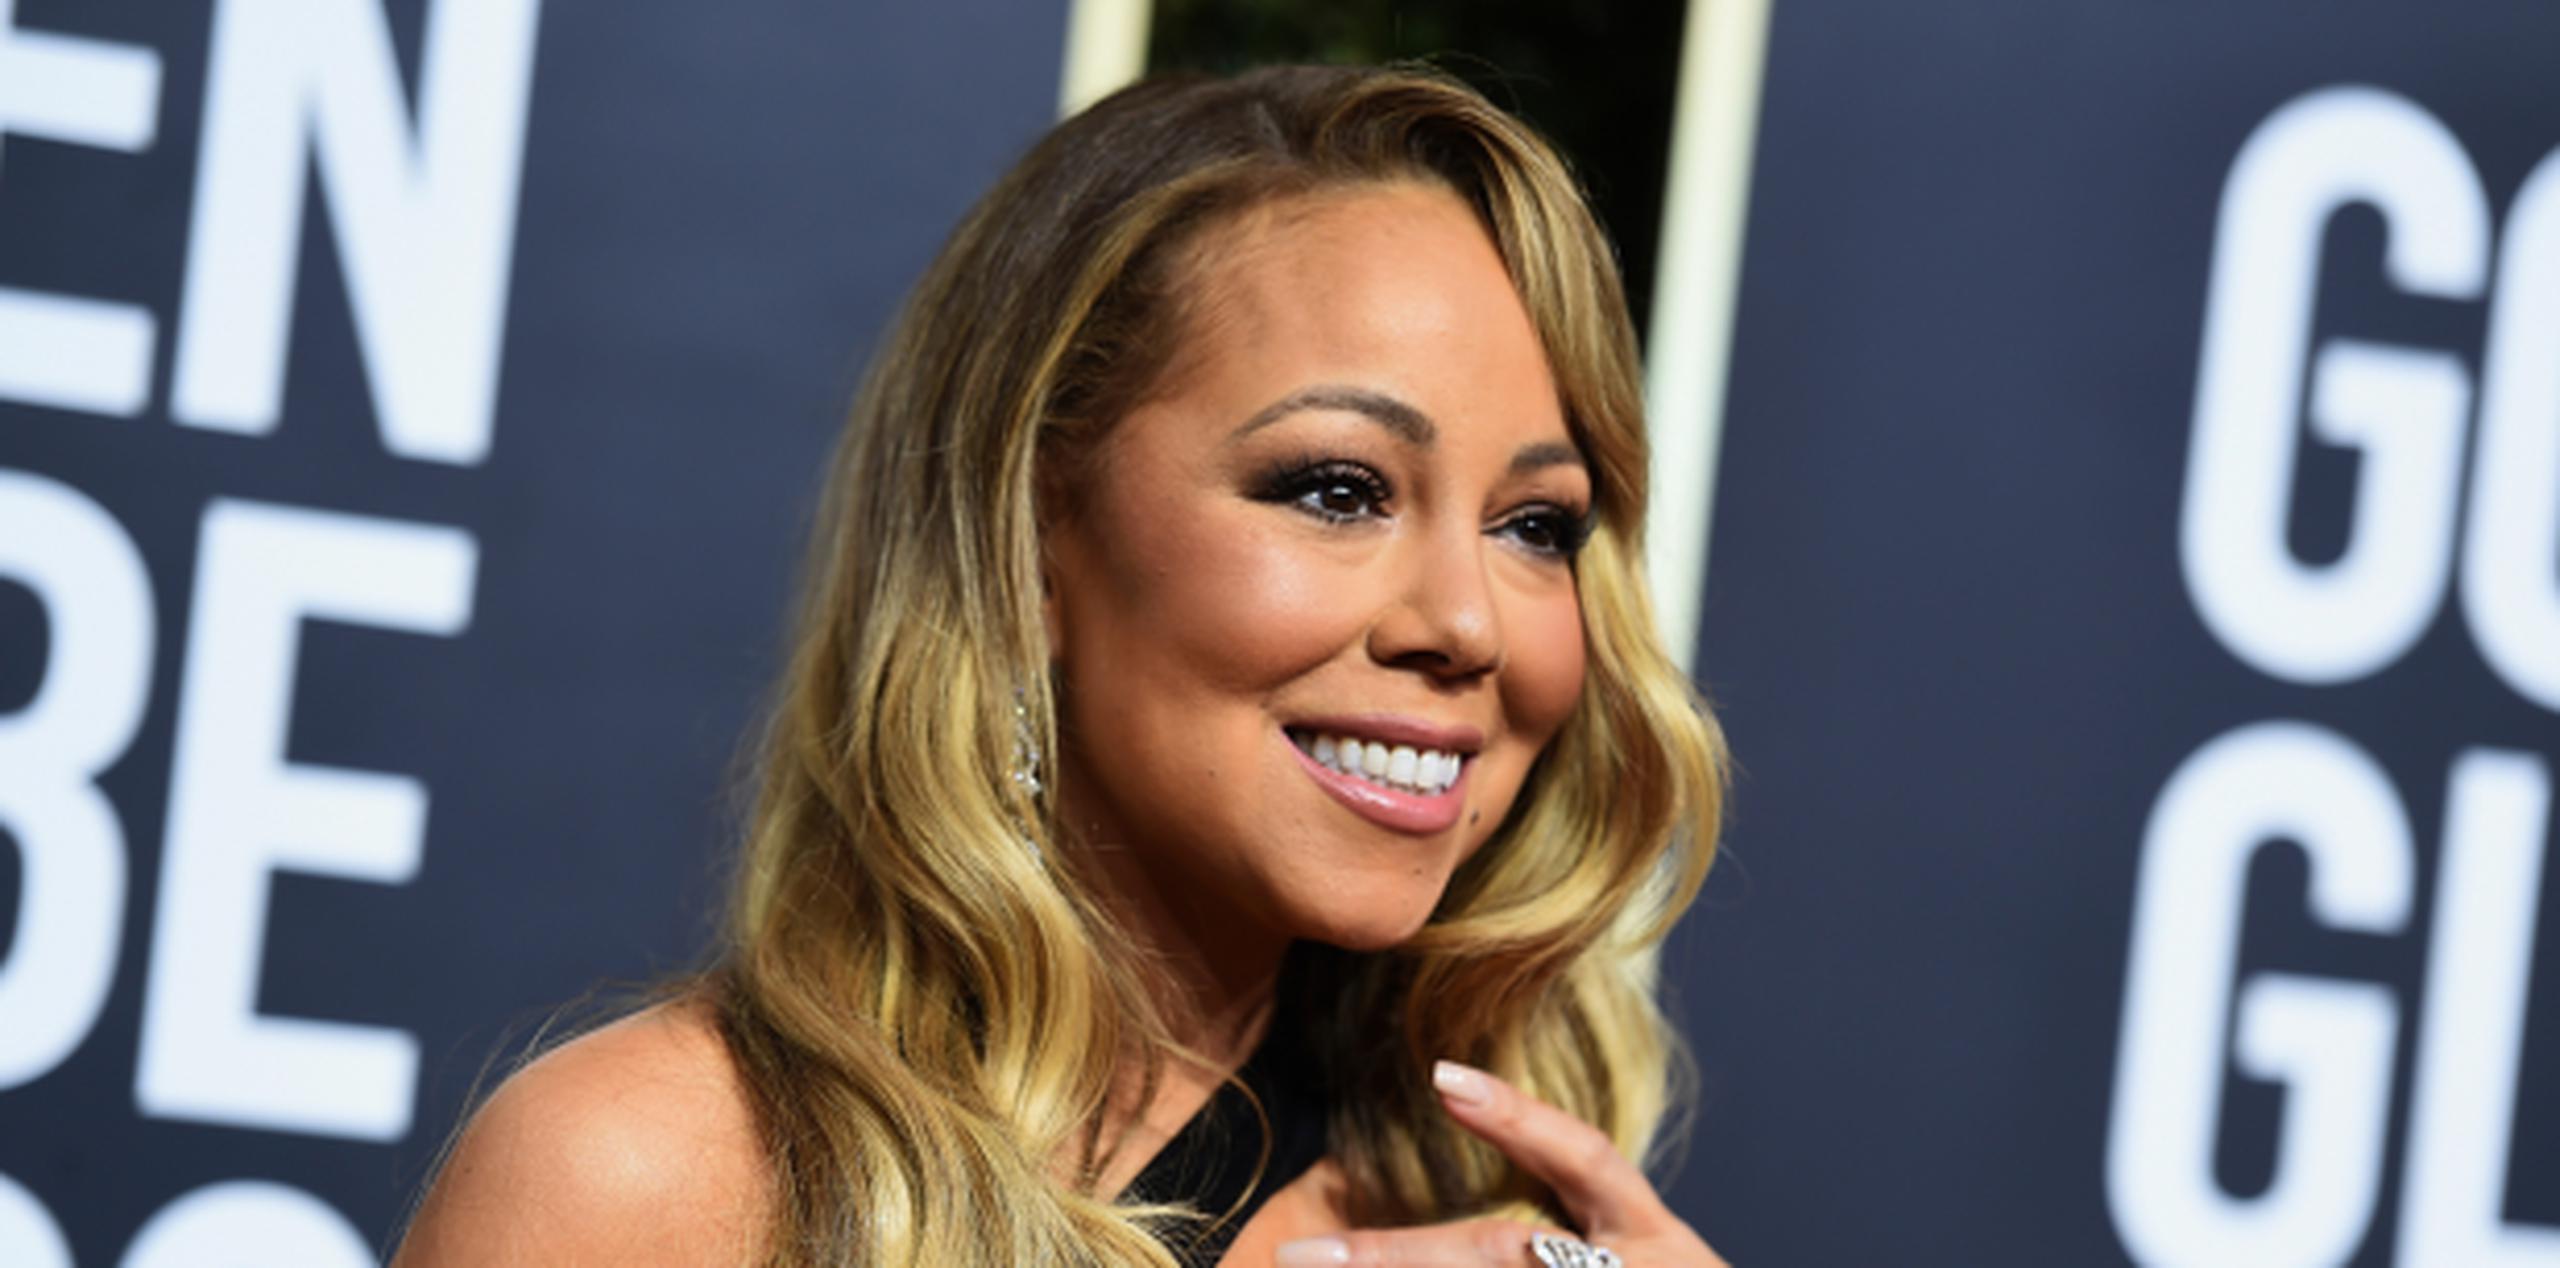 La mujer sumó que Mariah Carey tiene un problema de abuso de sustancias y no toma sus medicamentos para el trastorno bipolar. (Jordan Strauss / Invision / AP)